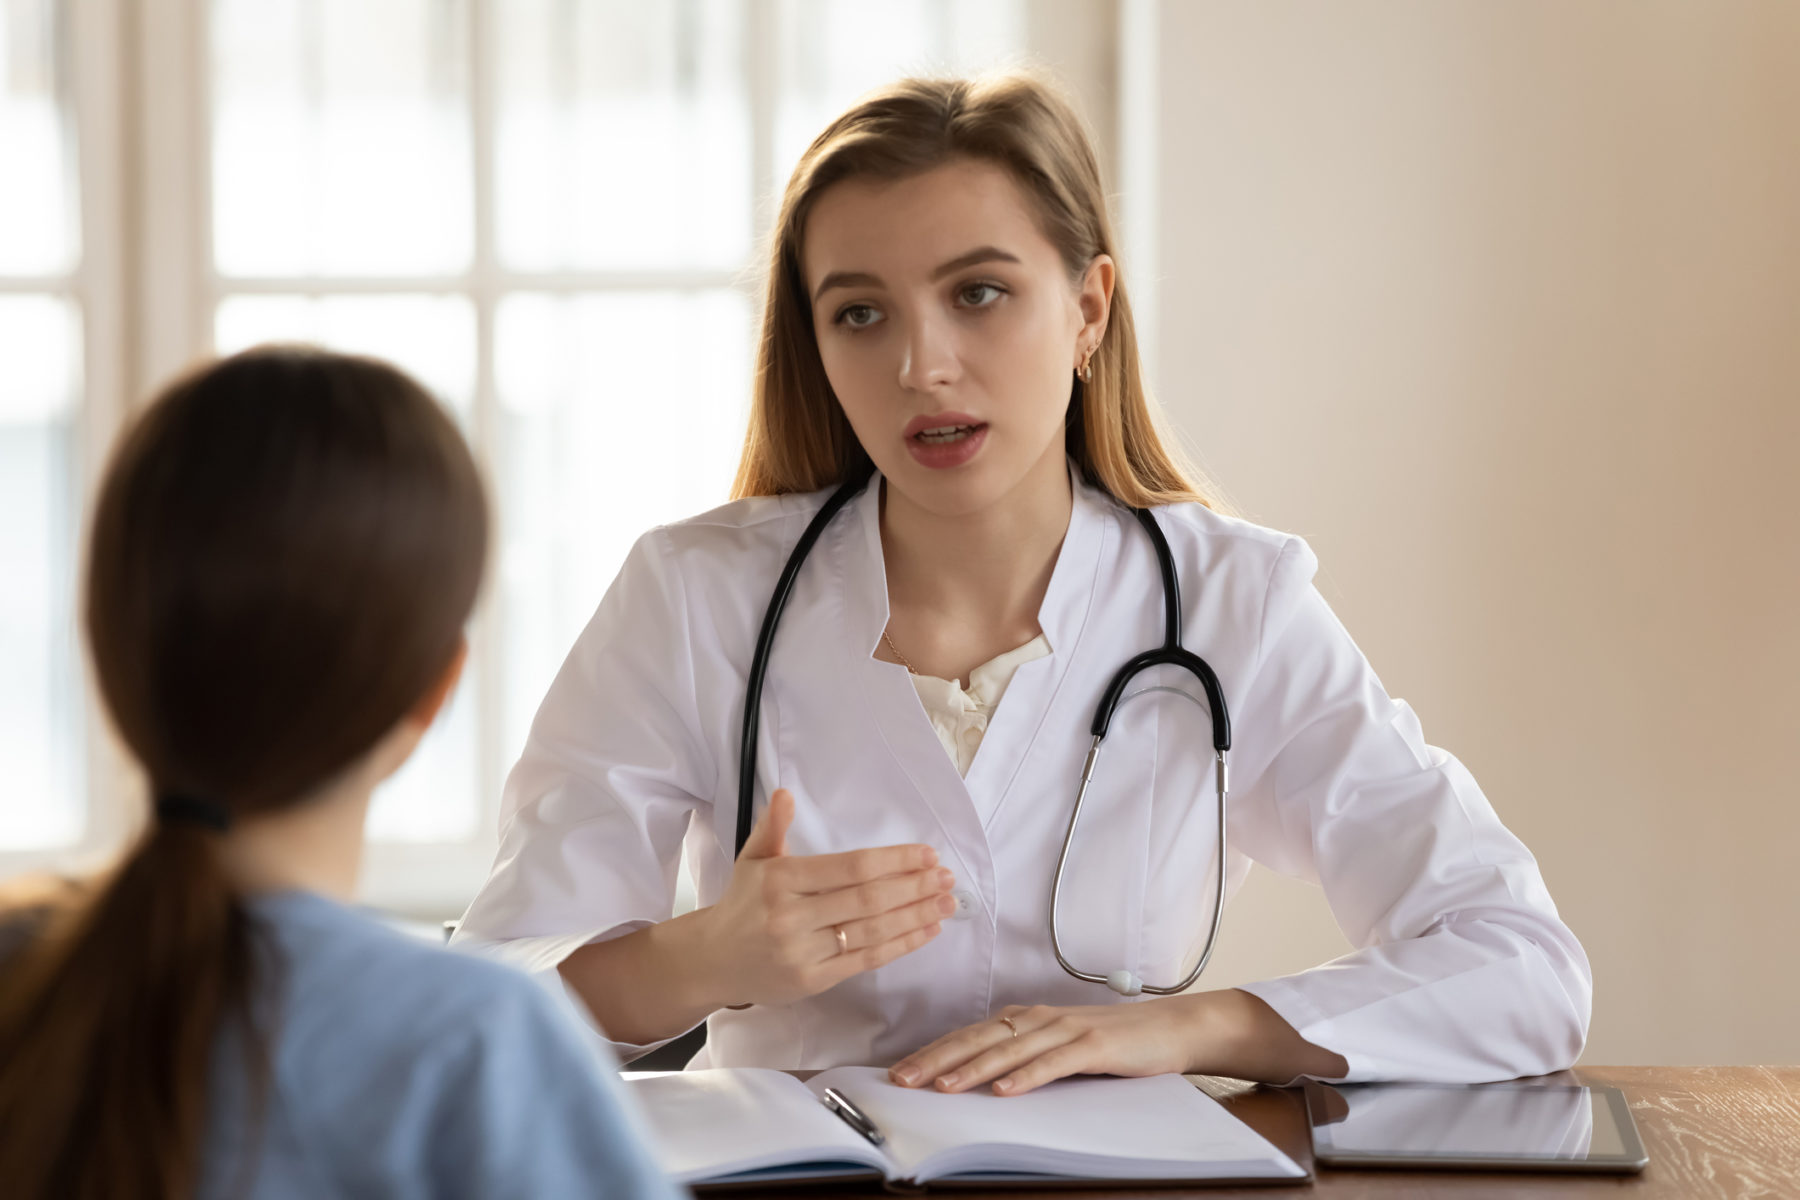 Une jeune médecin explique quelque chose à une patiente assise en face d'elle, dans son cabinet